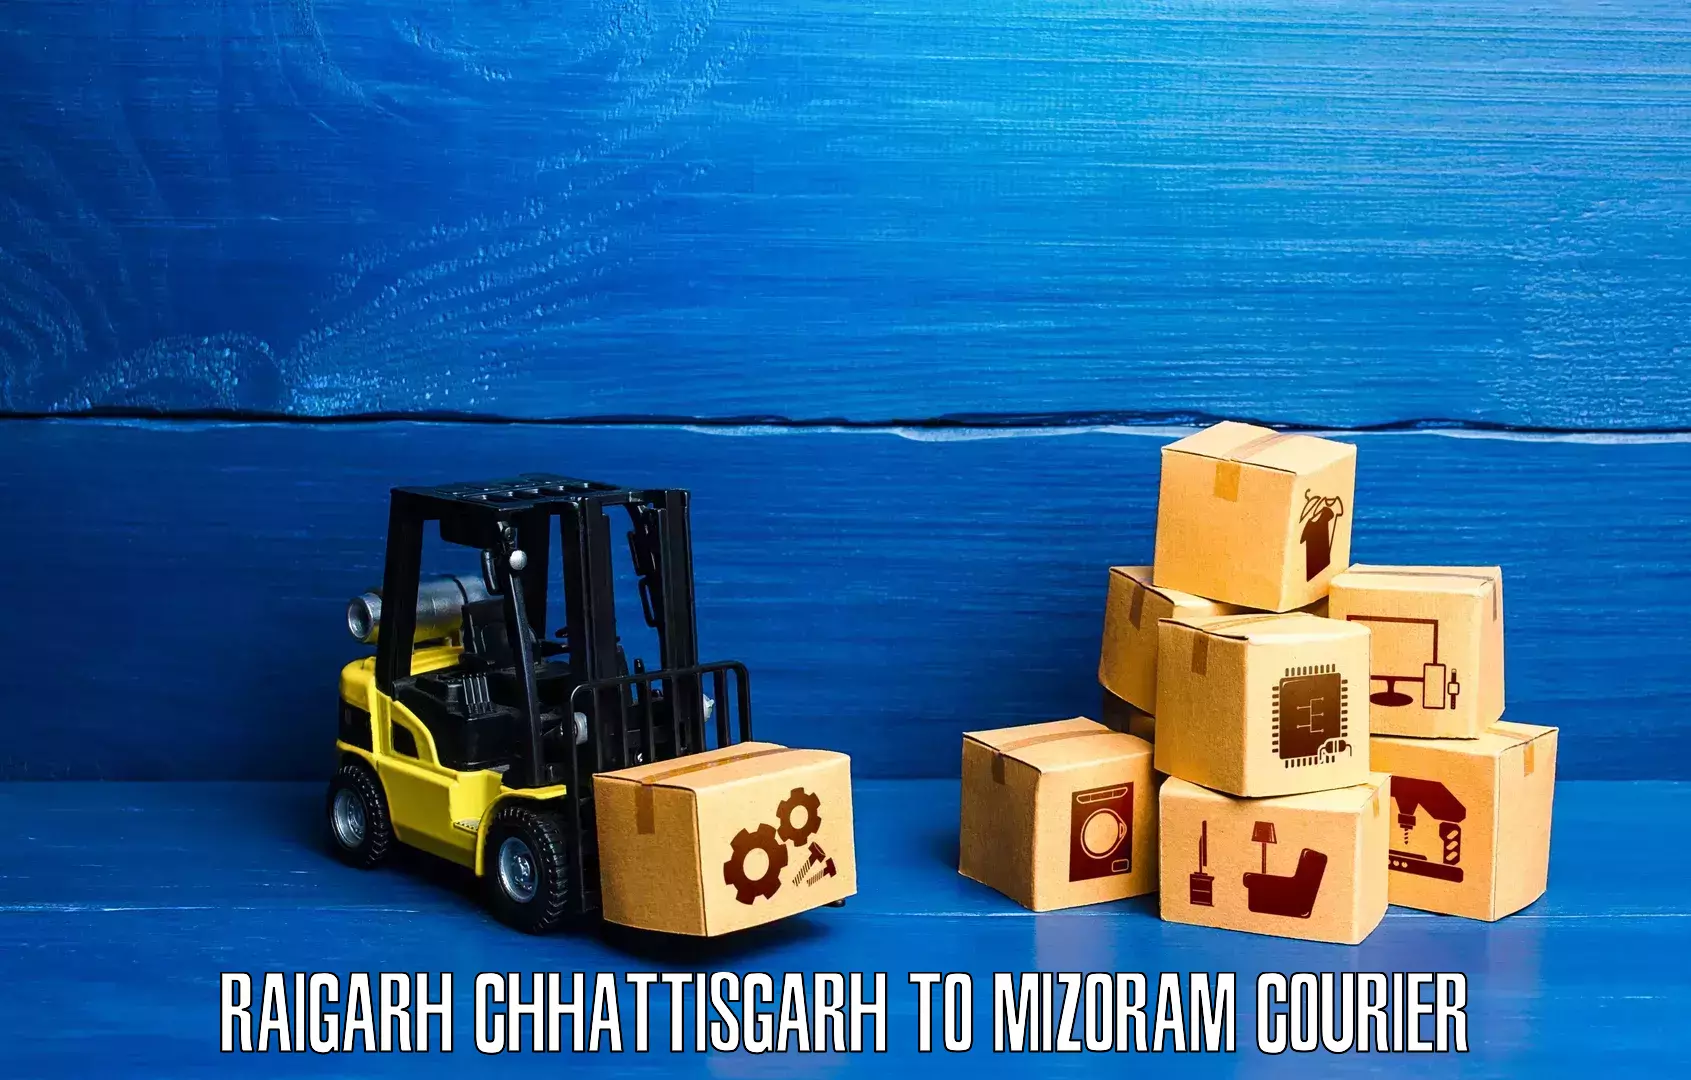 Ocean freight courier Raigarh Chhattisgarh to Lawngtlai